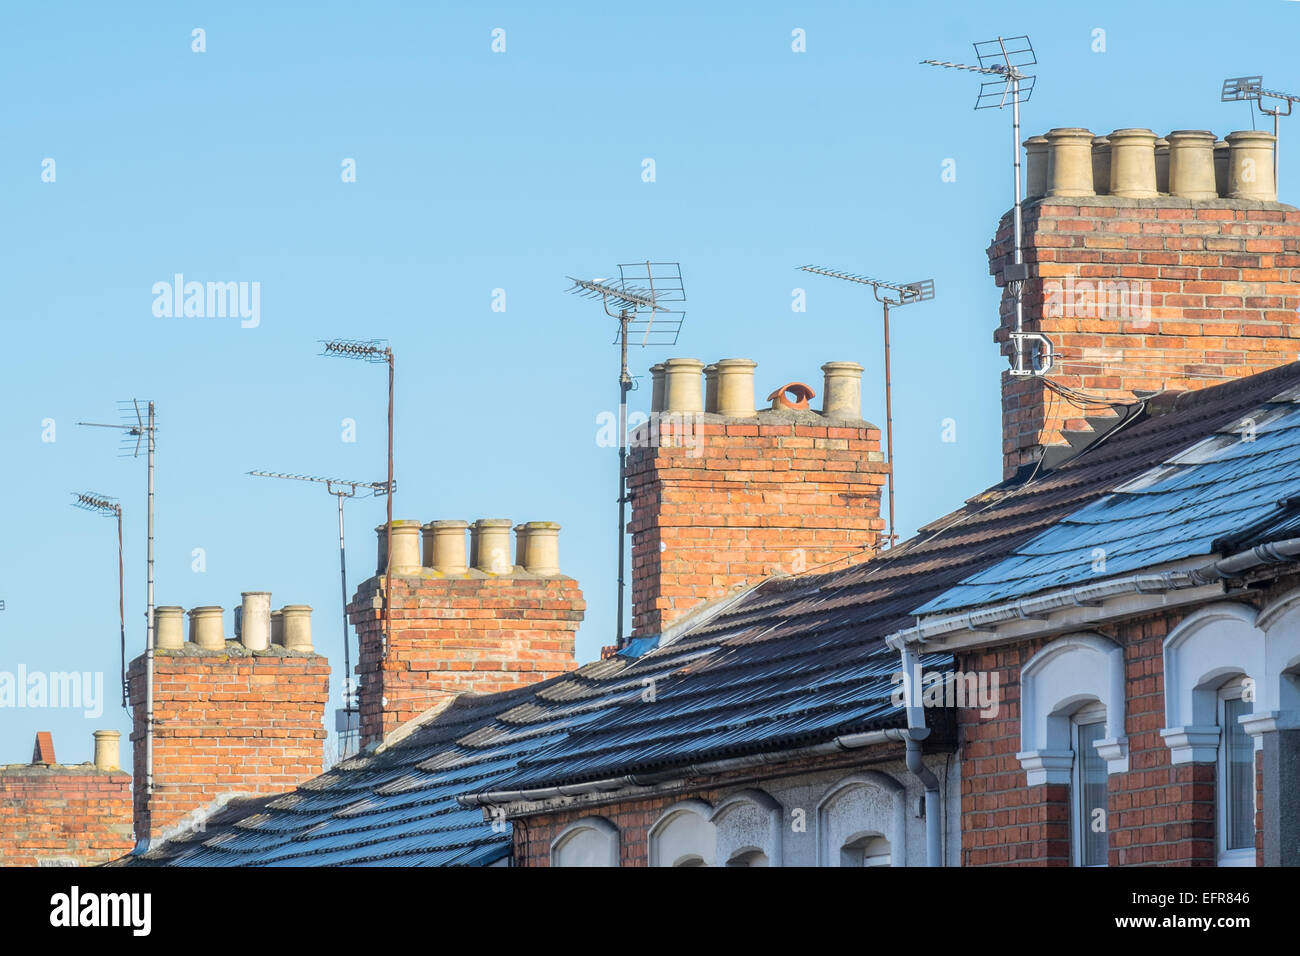 Die Dächer, Schornsteine & Fernsehantennen typisch viktorianischen Reihenhaus Häuser in UK, Suburban Straße an einem klaren Tag Stockfoto